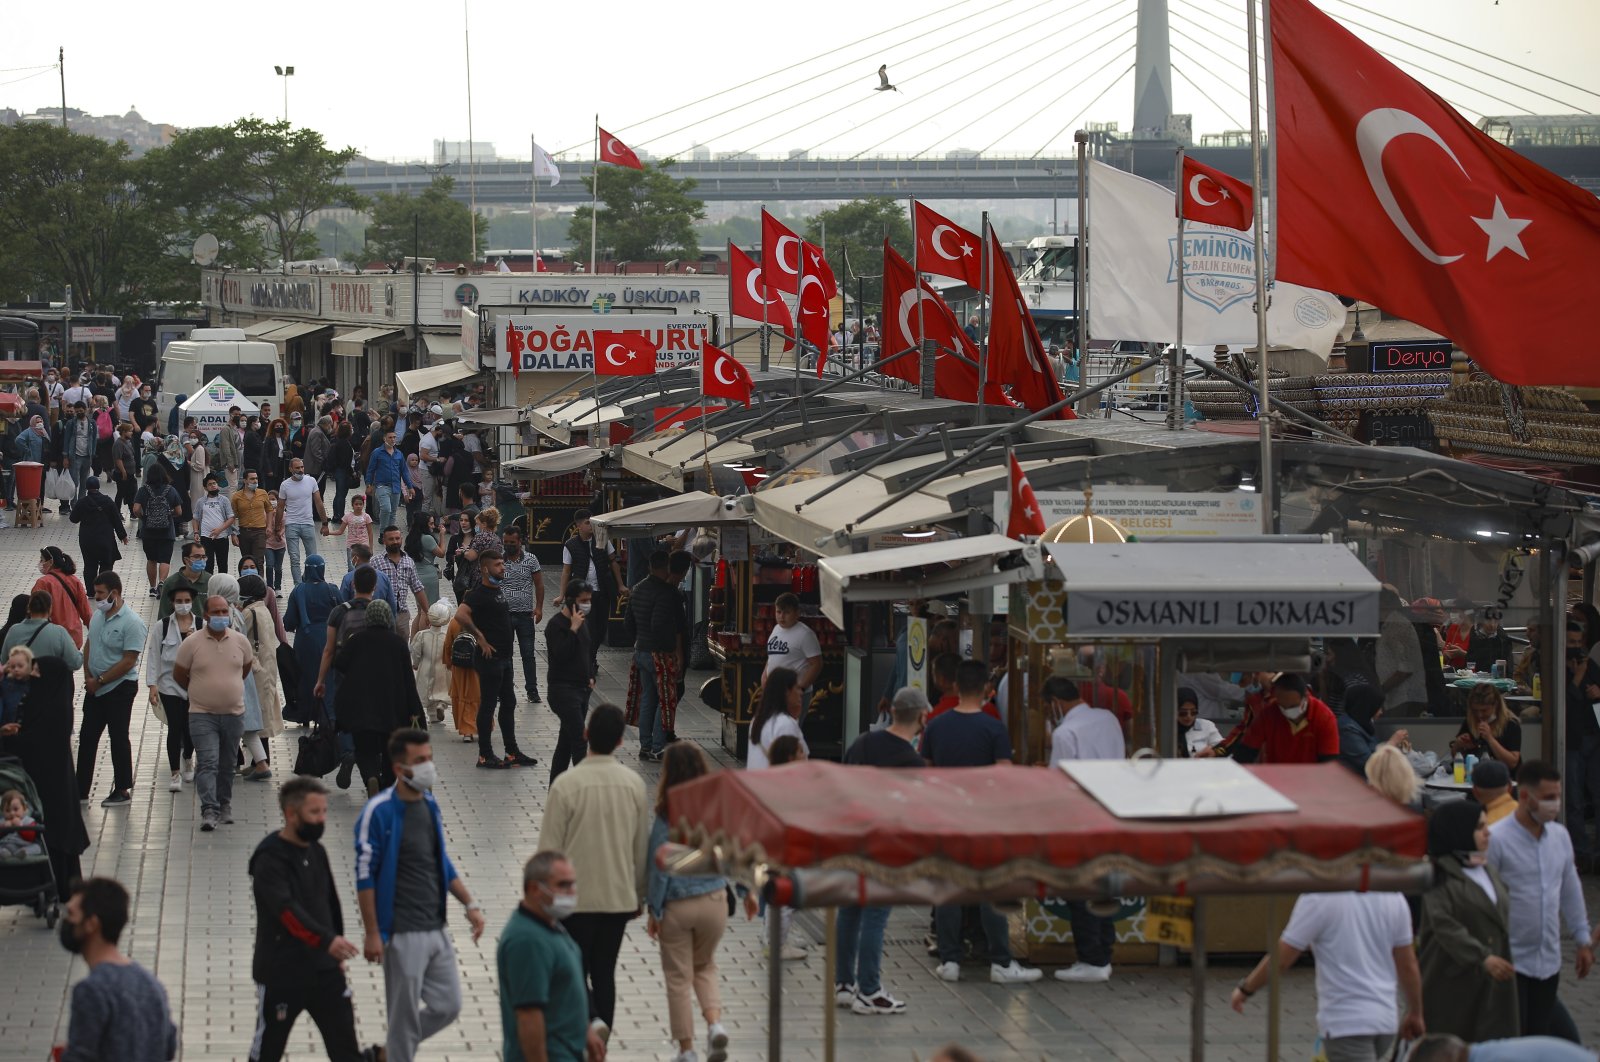 People walk in the Eminönü neighborhood, in Istanbul, Turkey, May 28, 2021. (AP Photo)